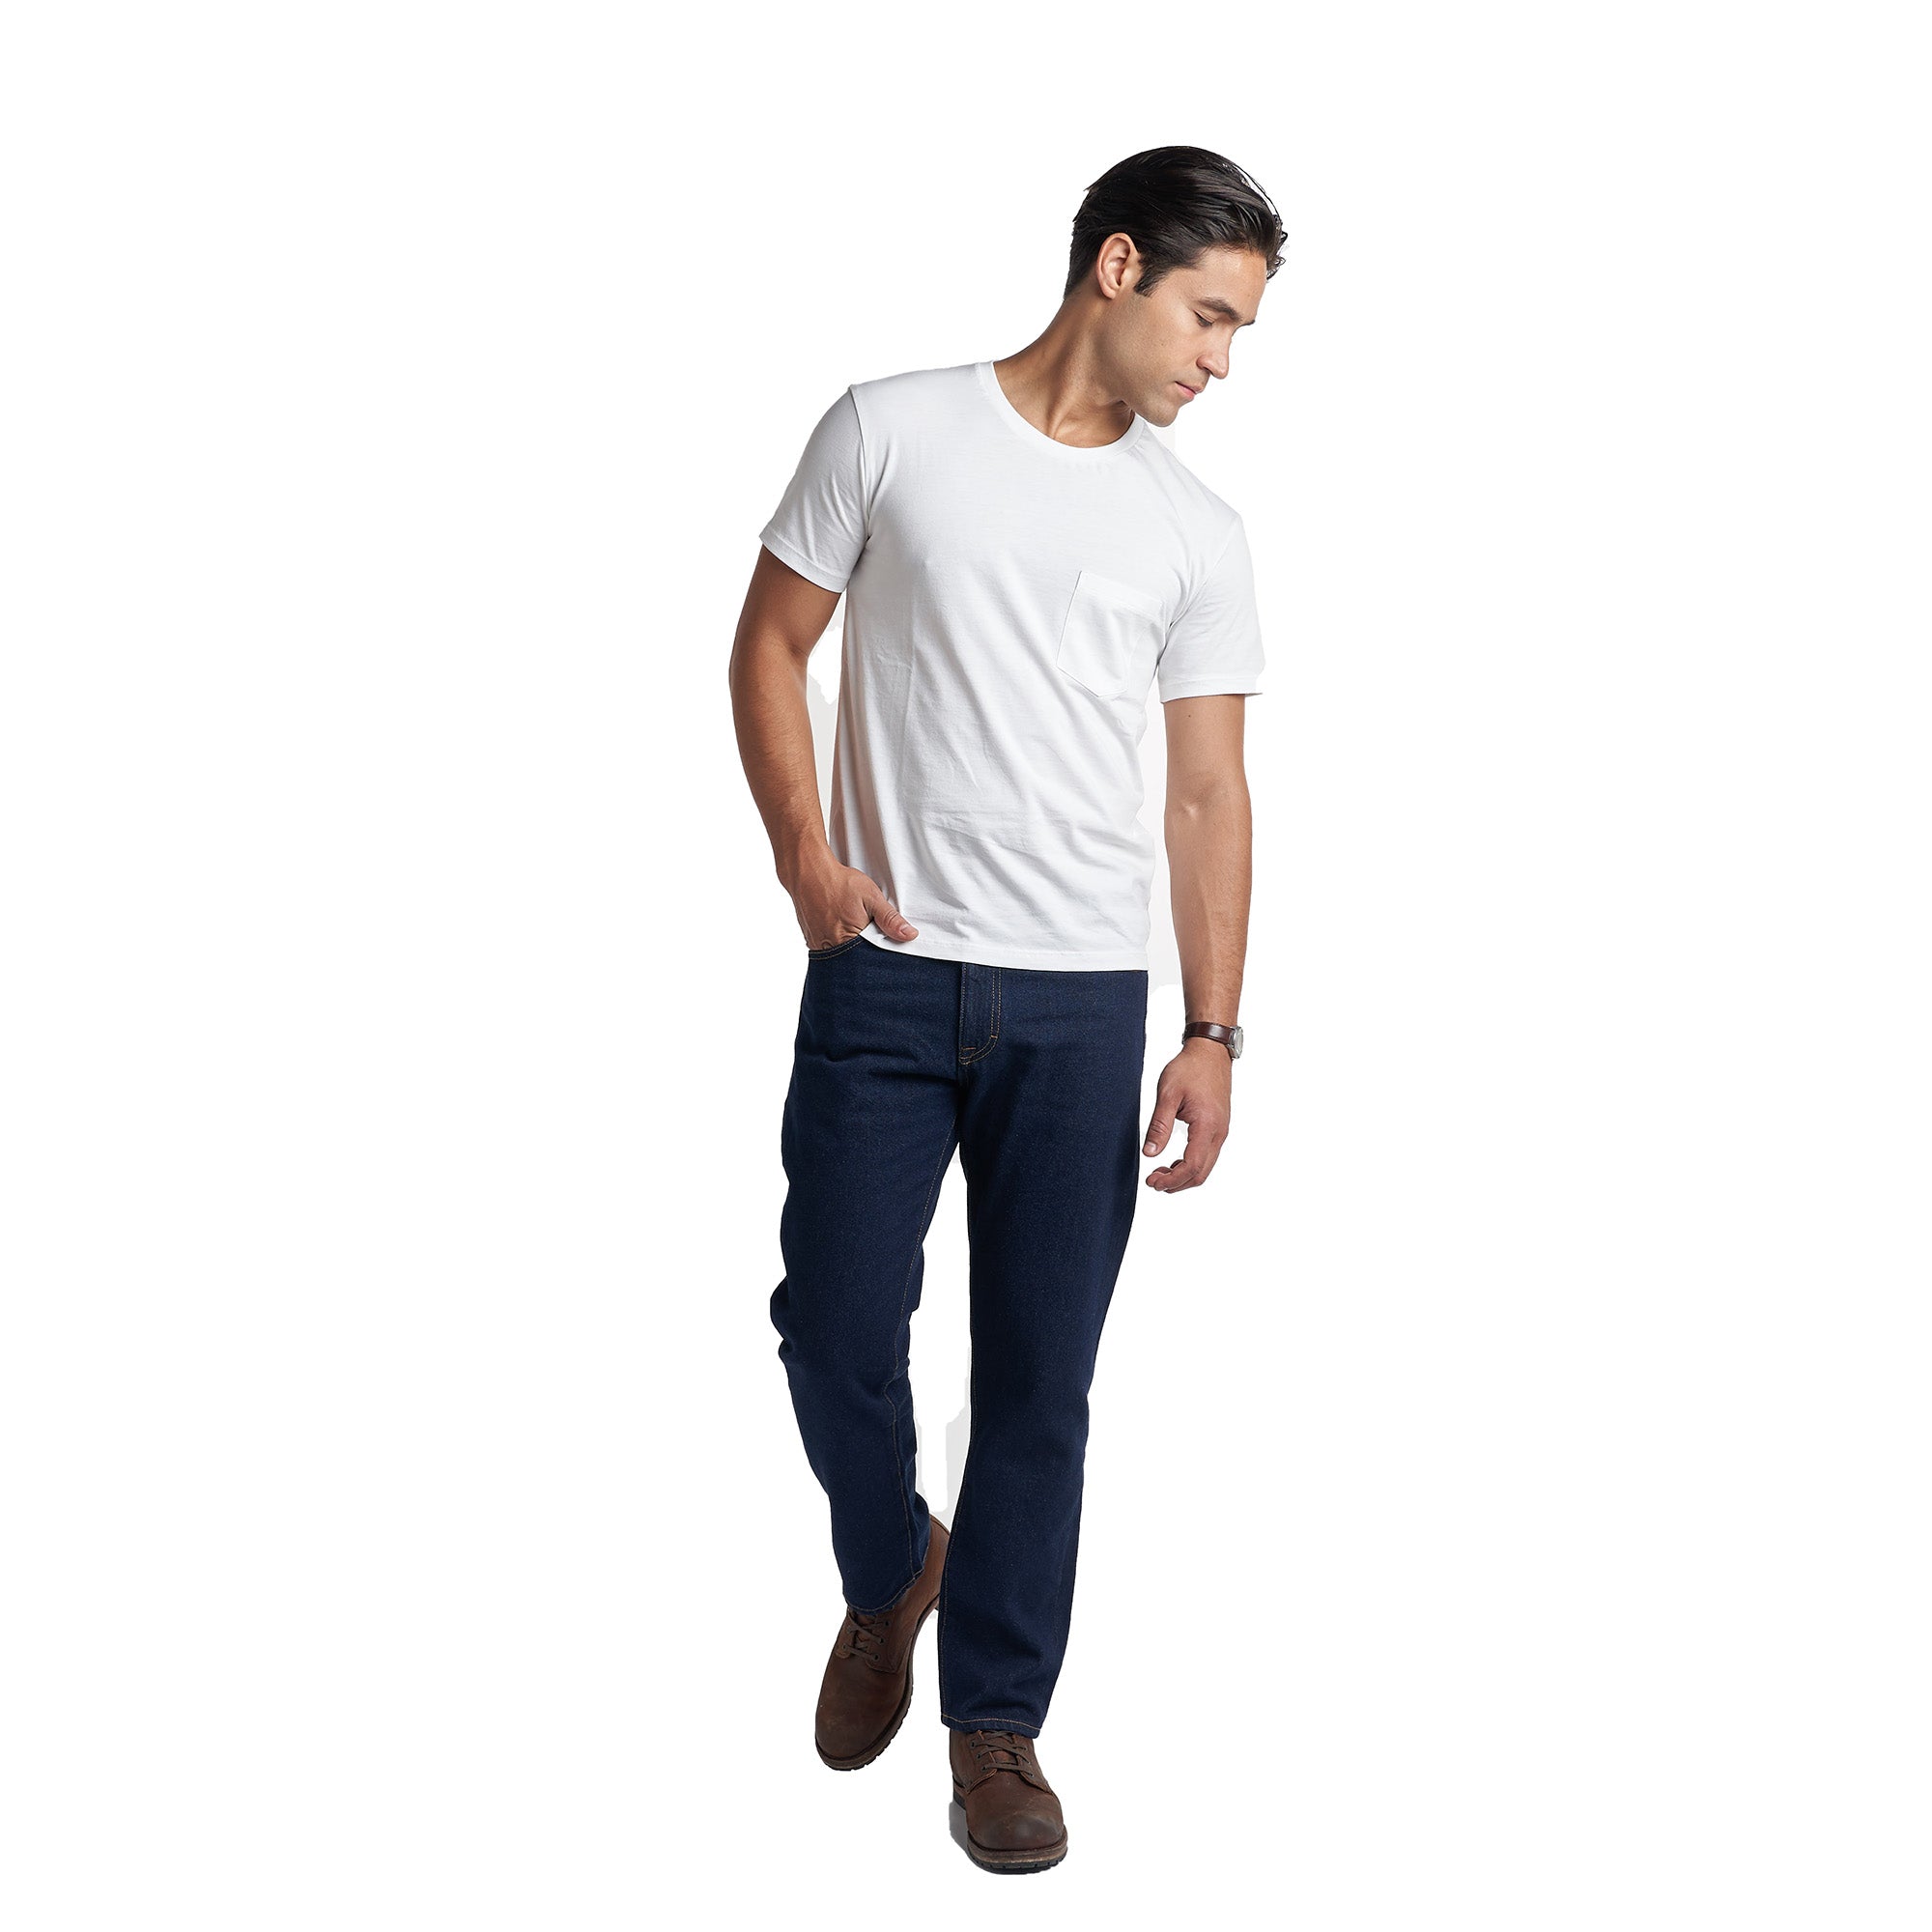 PMNYC Jeans Standard Fit - Dark Indigo Wash